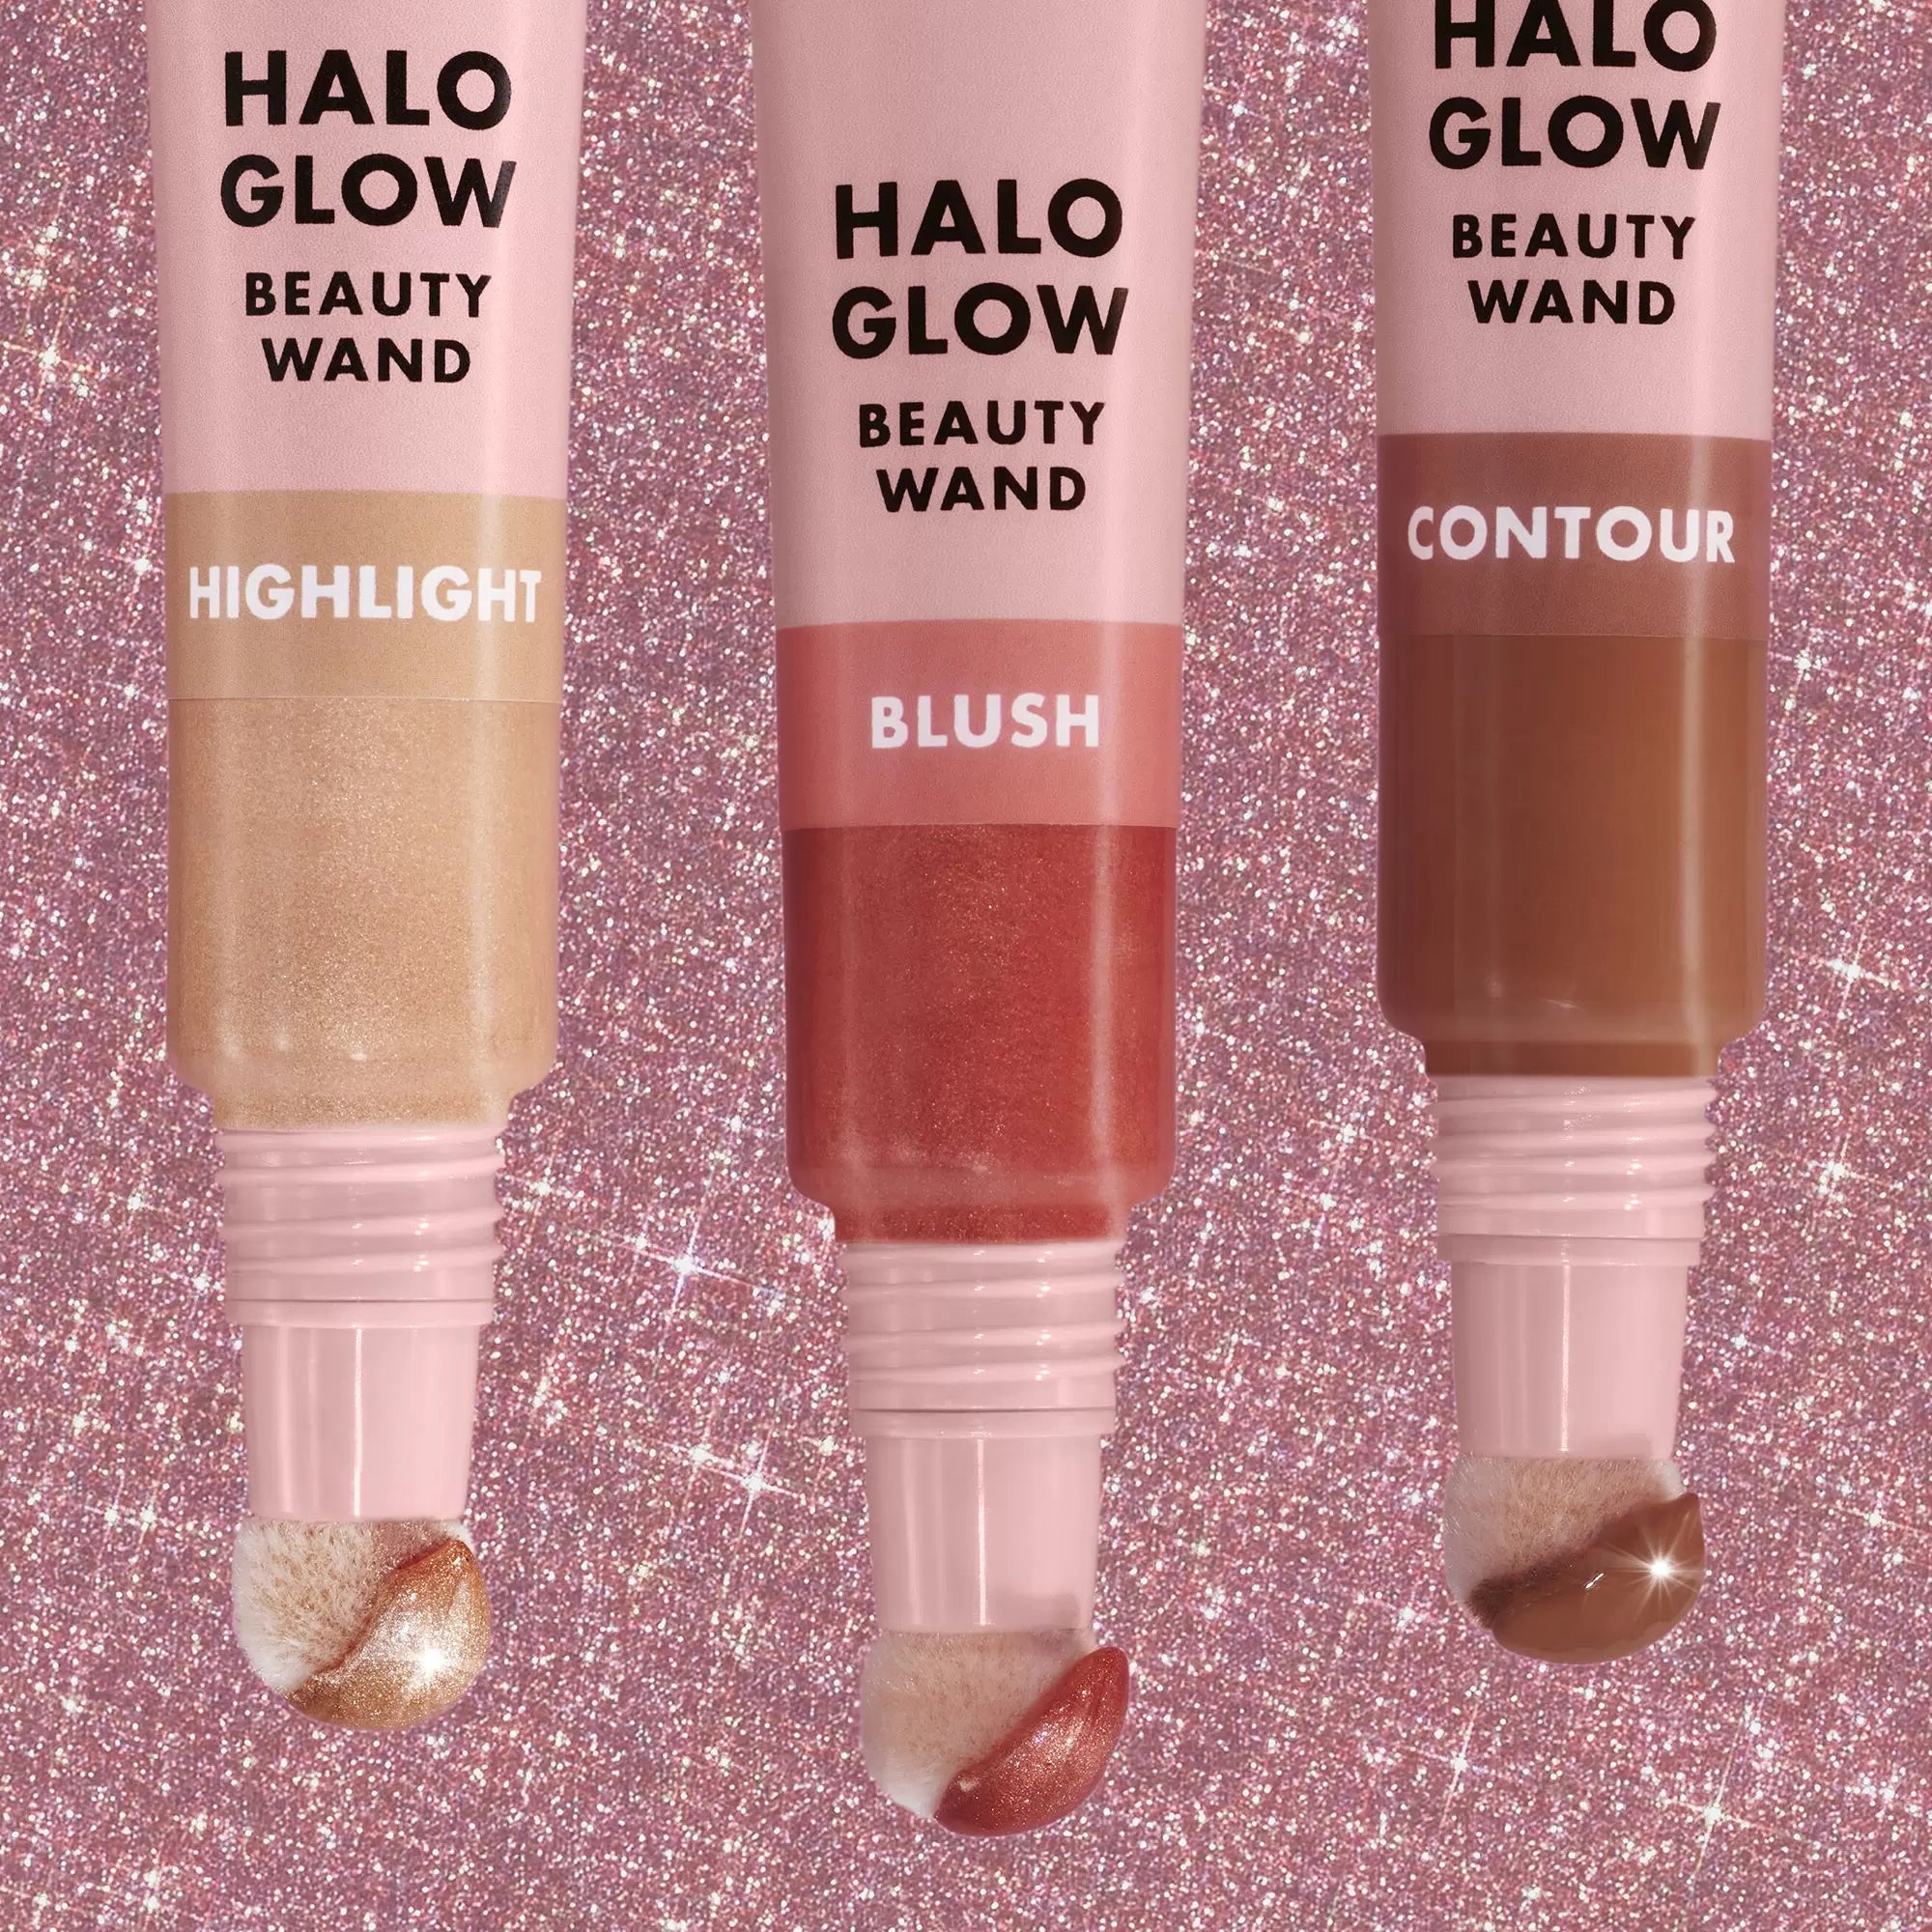 Halo Glow Blush Beauty Wand